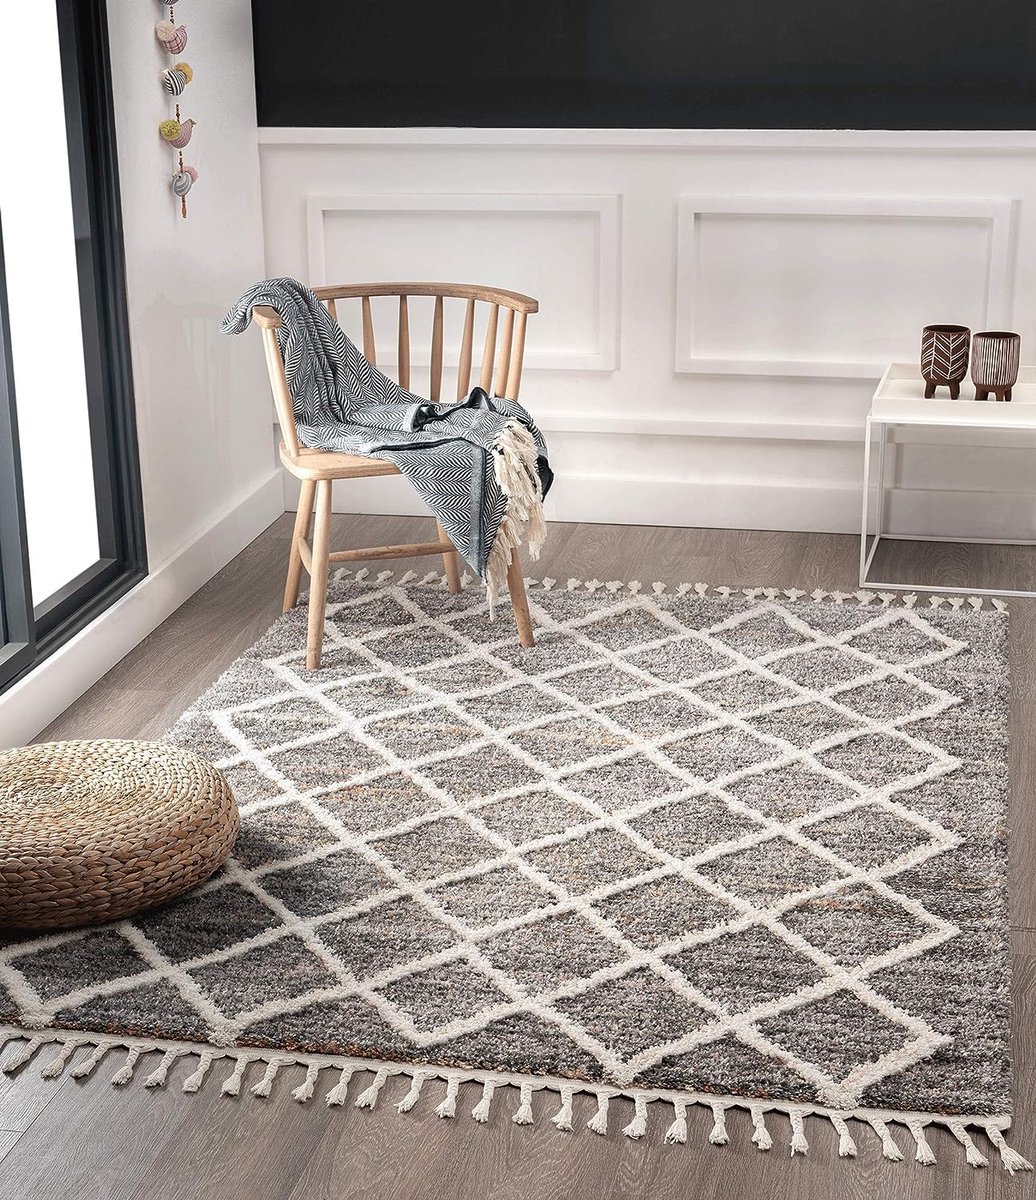 The Carpet Relax Tapis Moderne Courts, Dessous antidérapant, Lavable à 30  degrés, Super Doux